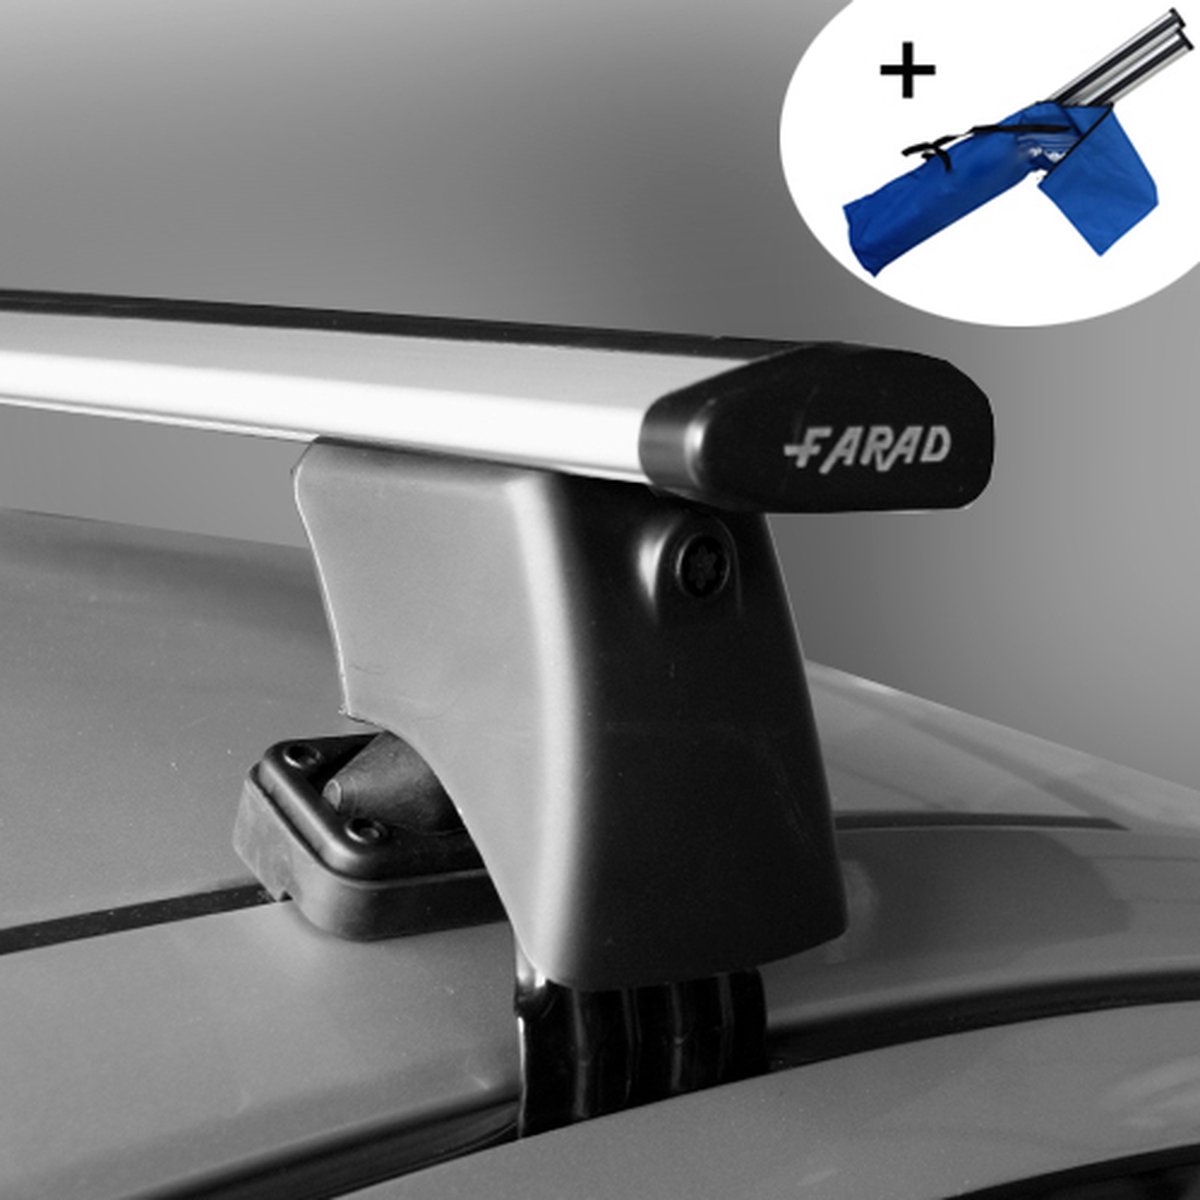 Dakdragers geschikt voor Seat Leon 5 deurs hatchback 2013 t/m 2020 - Wingbar - inclusief dakdrager opbergtas